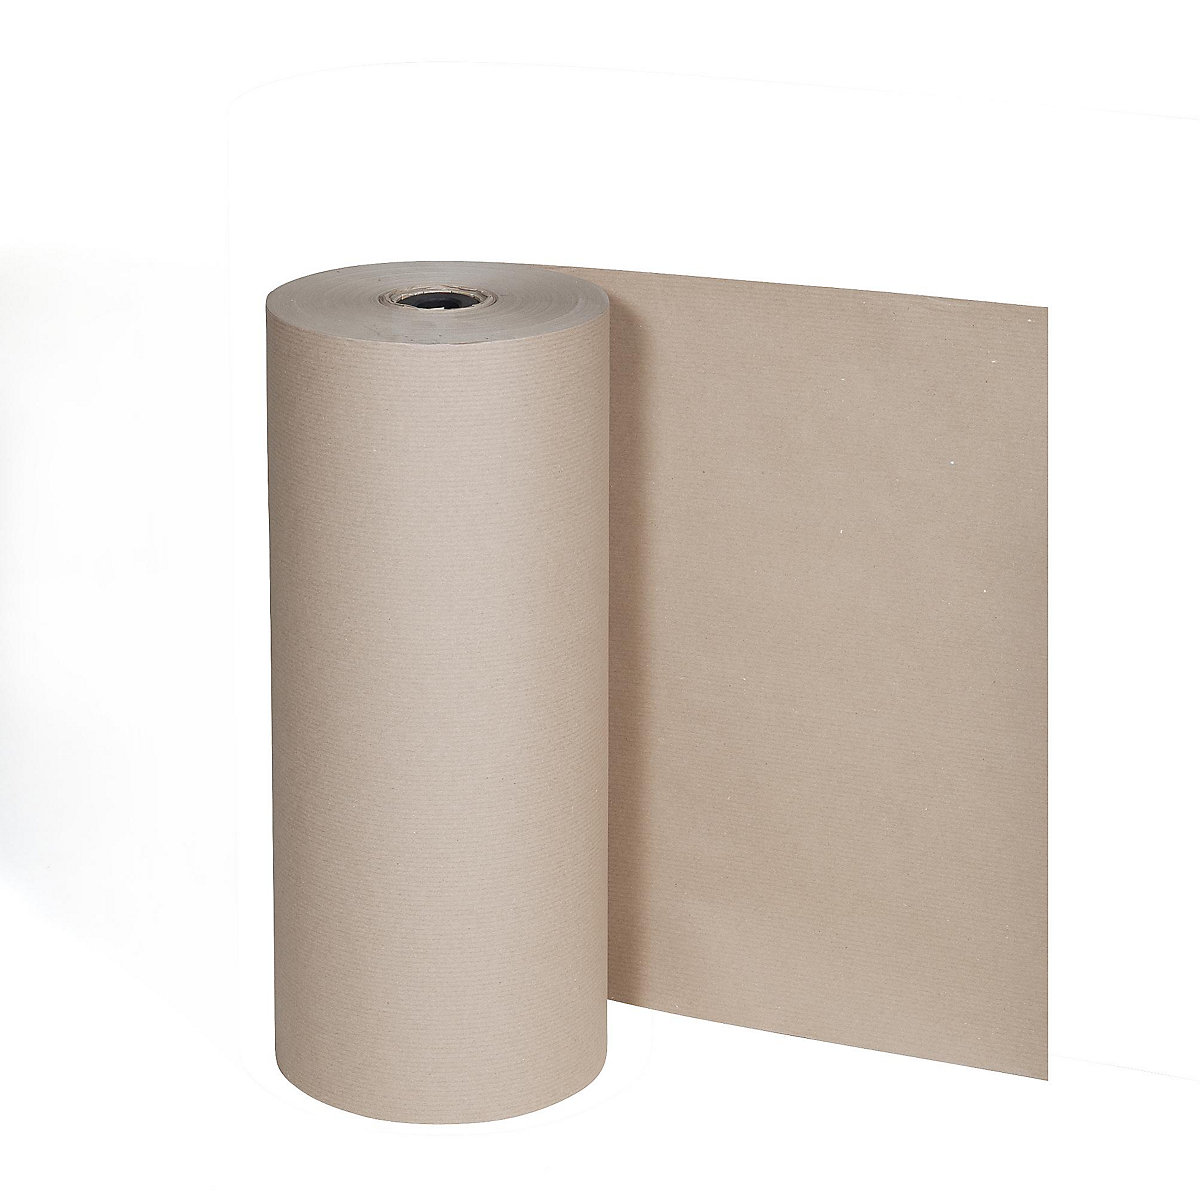 Hârtie pentru ambalat, 80 g/m², rolă mare pentru stativ vertical, 1250 mm lățime-4